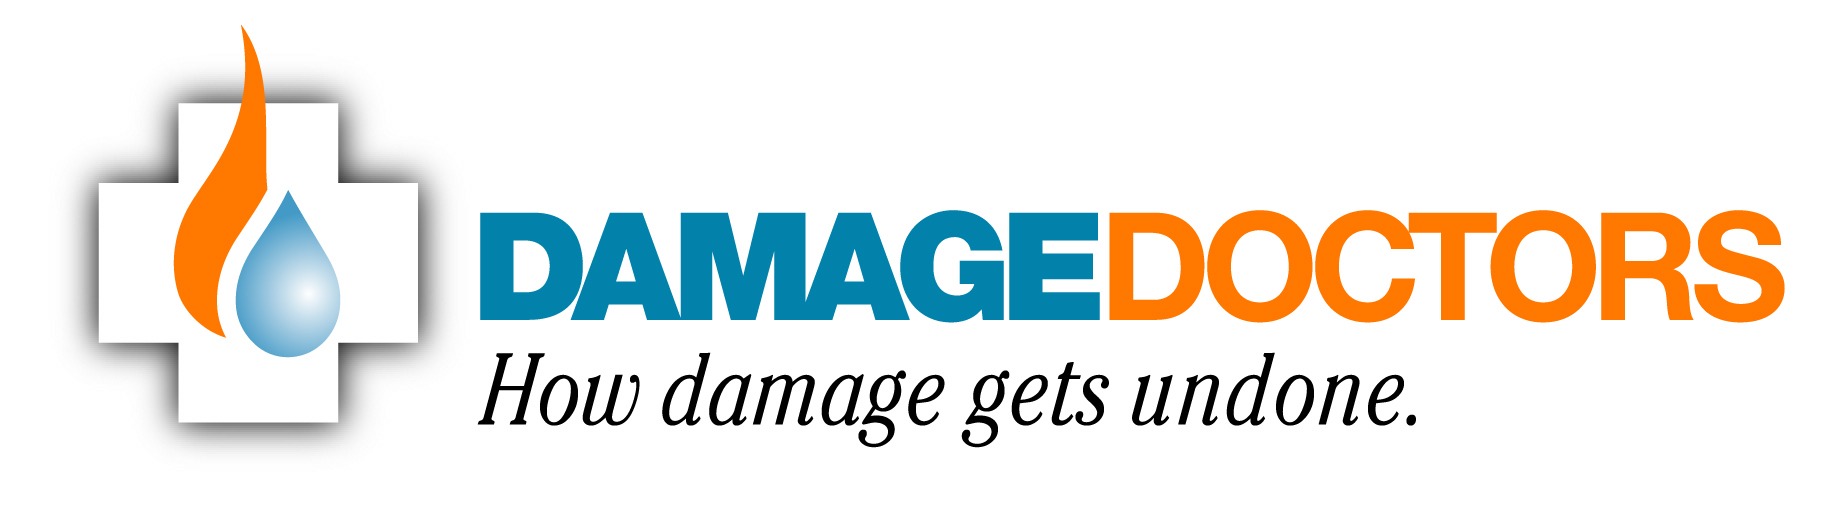 Damage Doctors